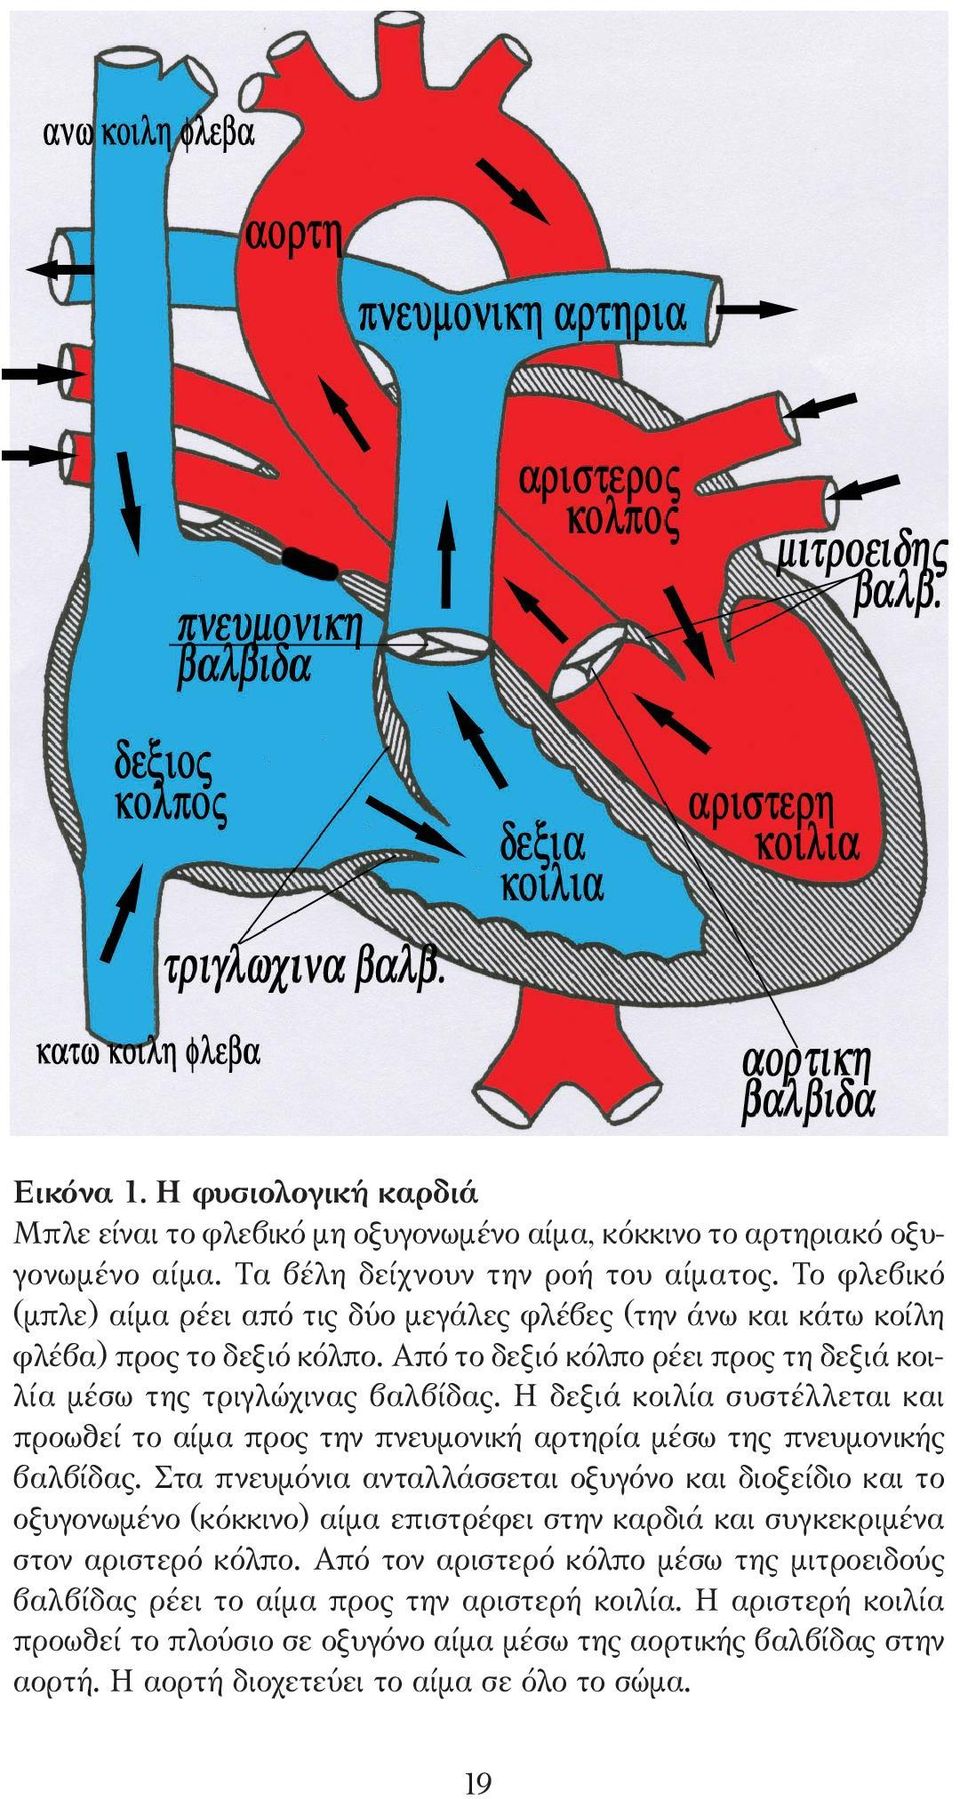 Η δεξιά κοιλία συστέλλεται και προωθεί το αίµα προς την πνευµονική αρτηρία µέσω της πνευµονικής βαλβίδας.